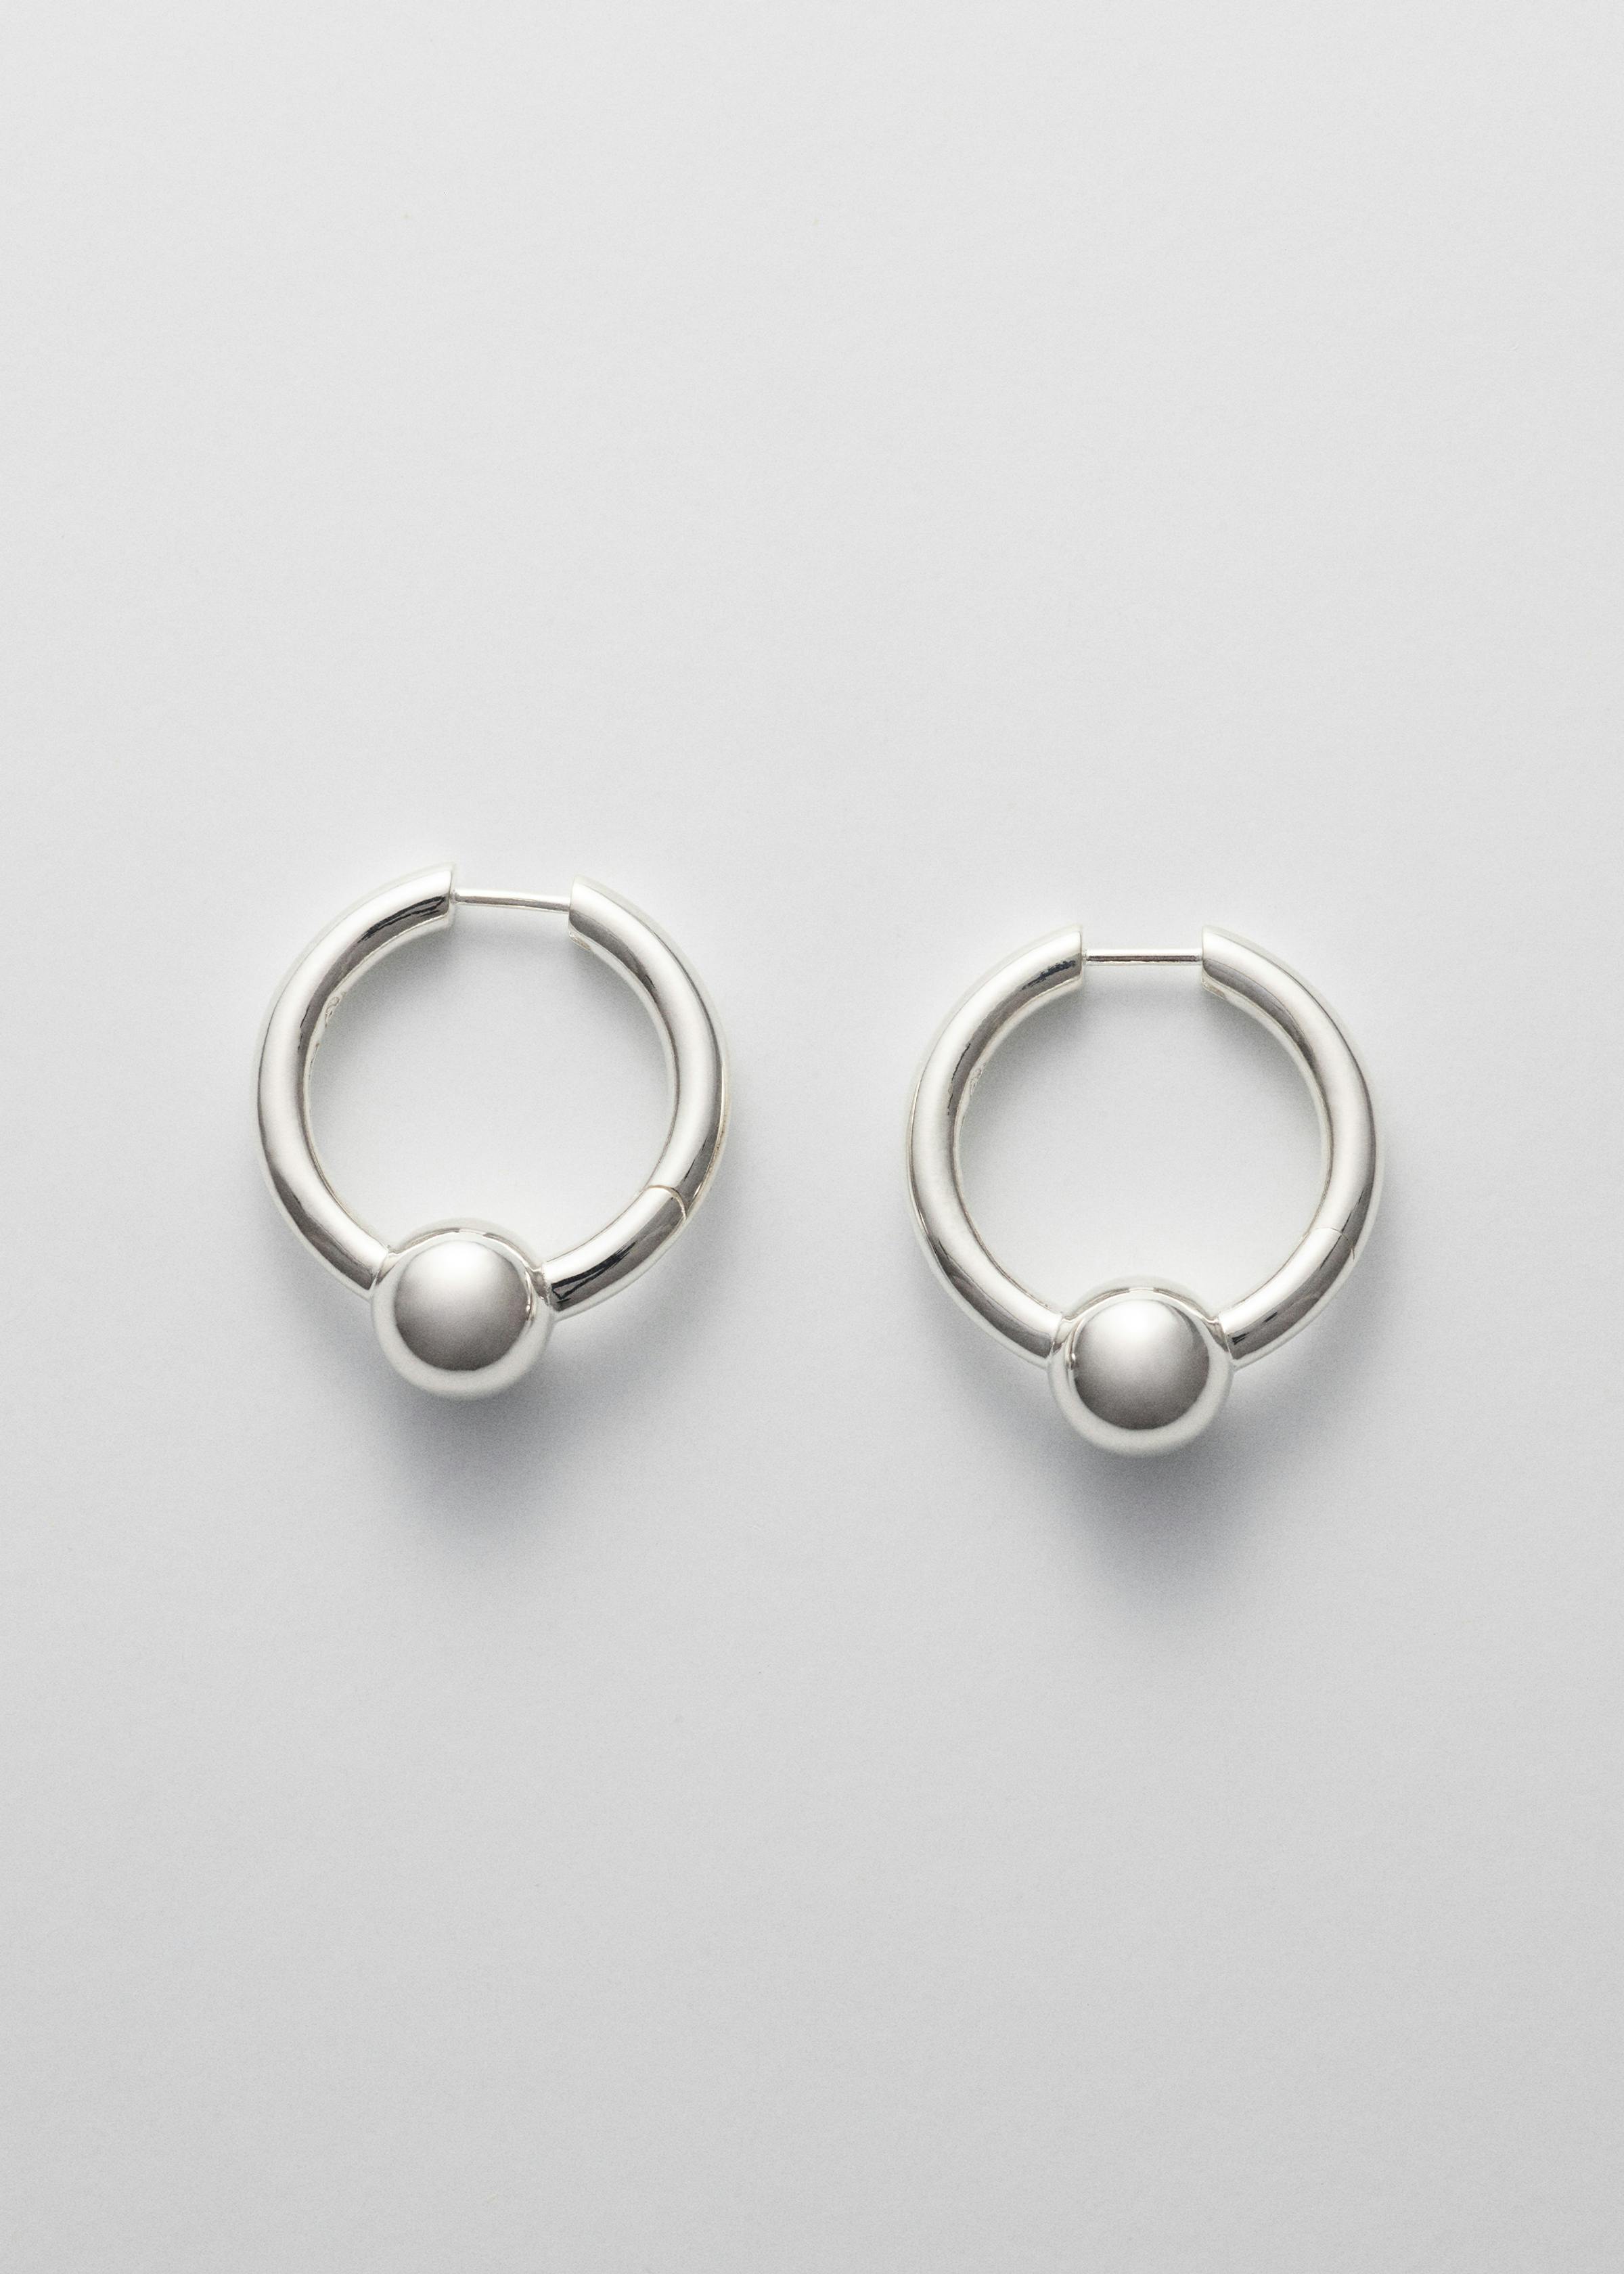 Pearl earrings large